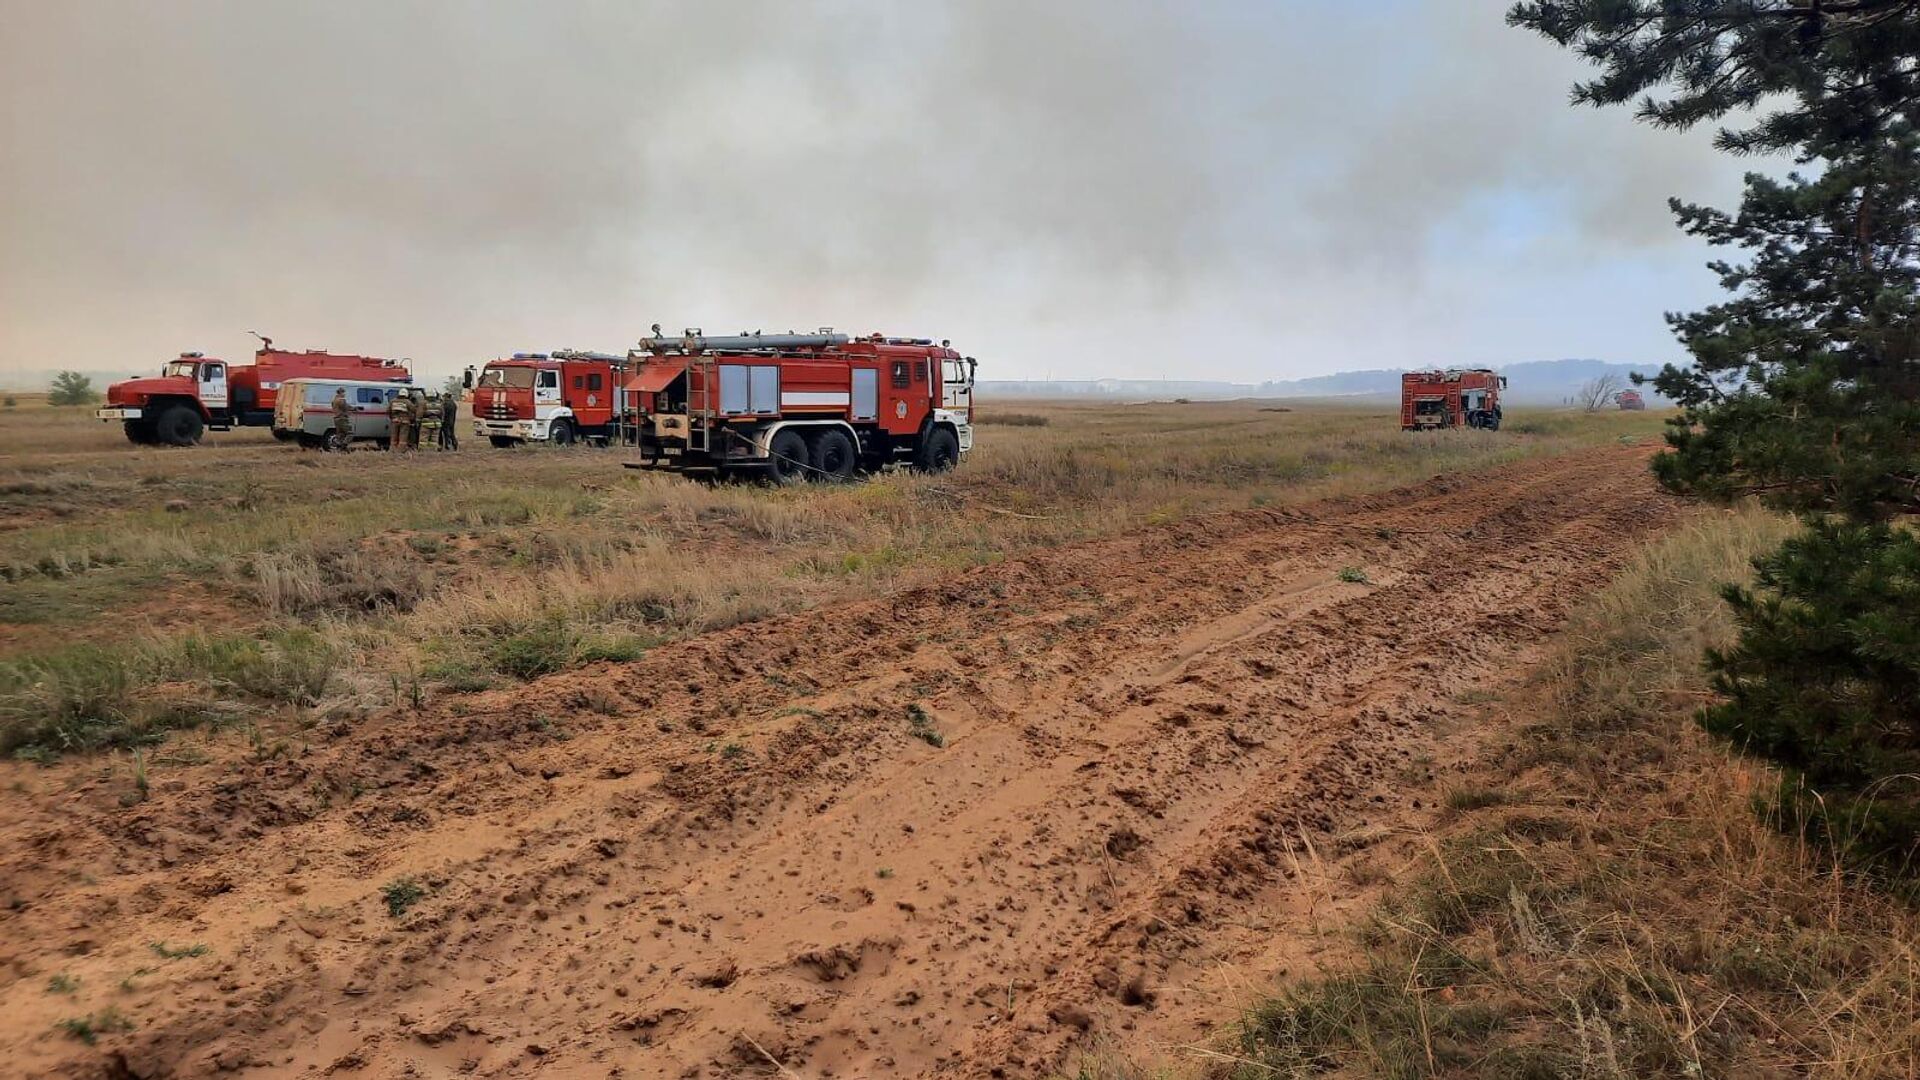 Лесные пожары в Костанайской области  тушат 196 единиц техники, 7 воздушных судна, 5 пожарных поезда, 1526 человек личного состава - Sputnik Казахстан, 1920, 22.09.2022